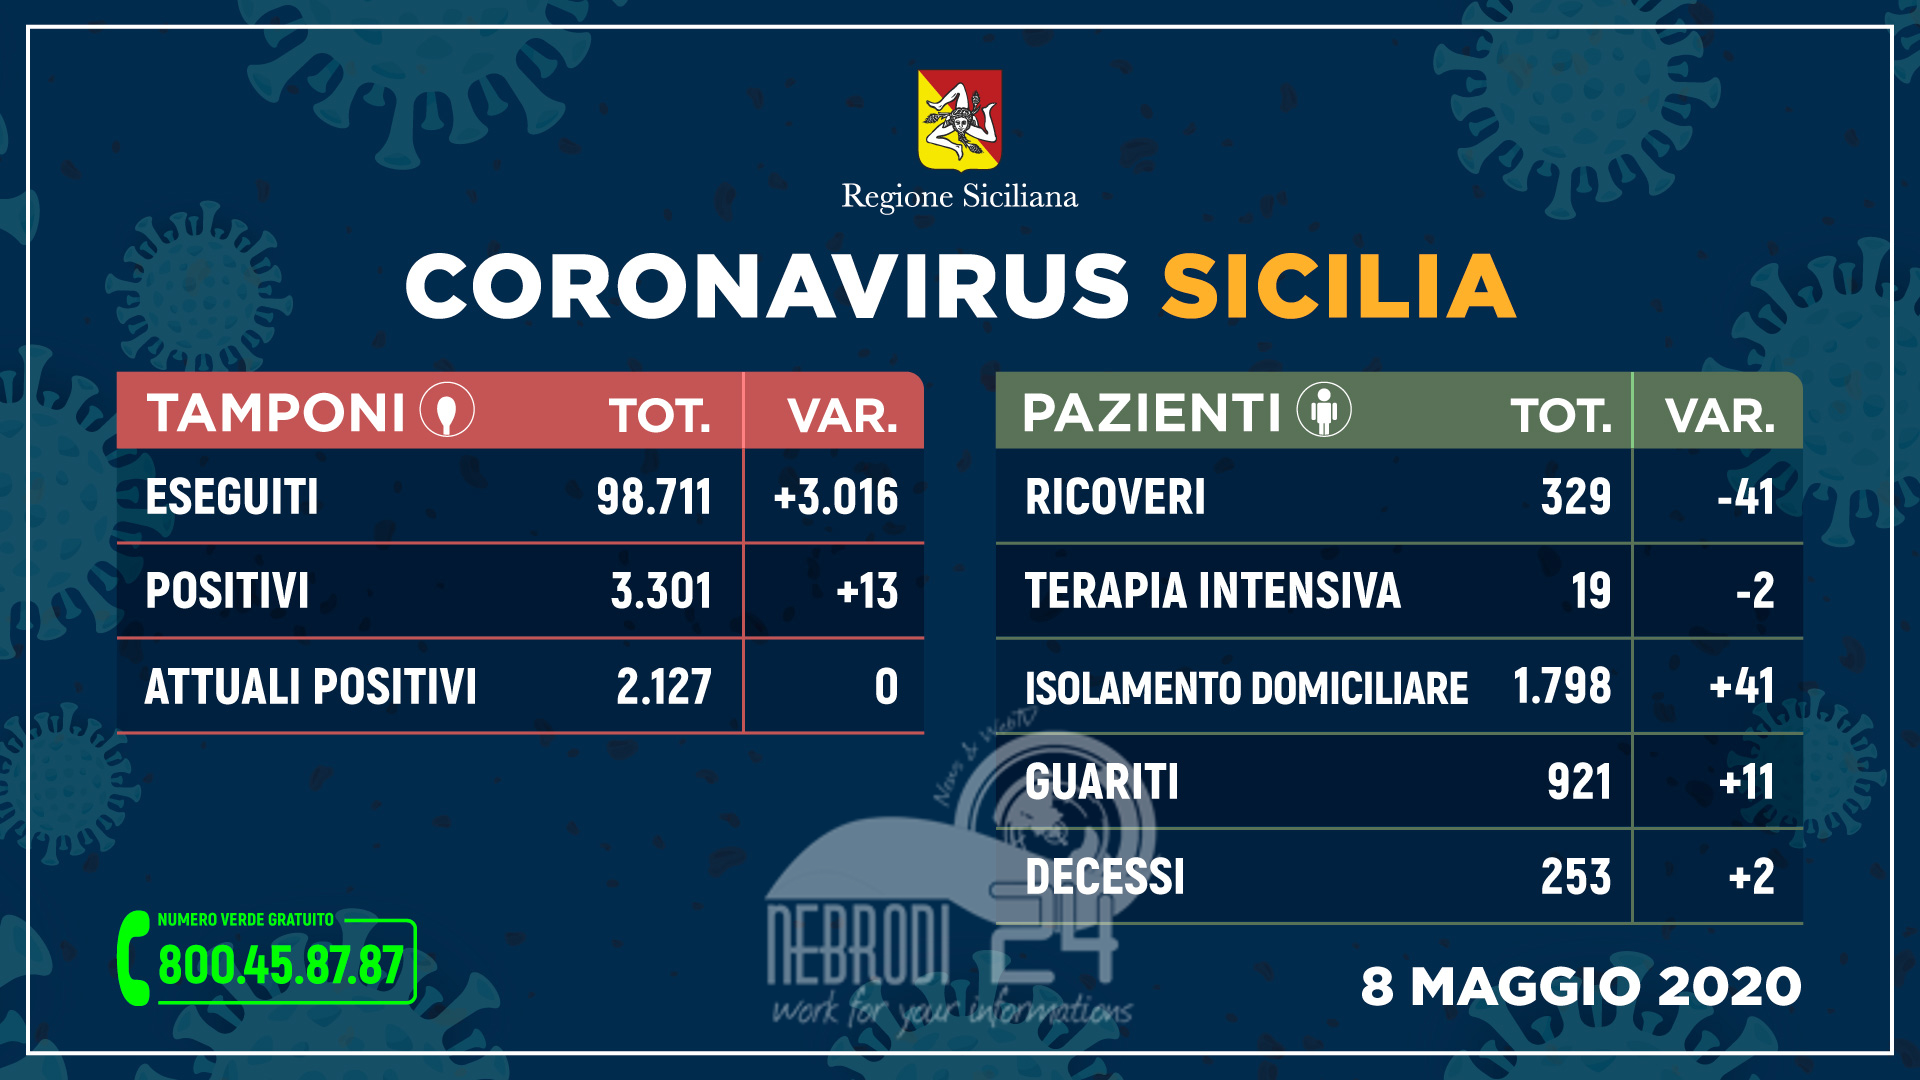 Coronavirus: in Sicilia sempre meno ricoveri, aumentano guariti